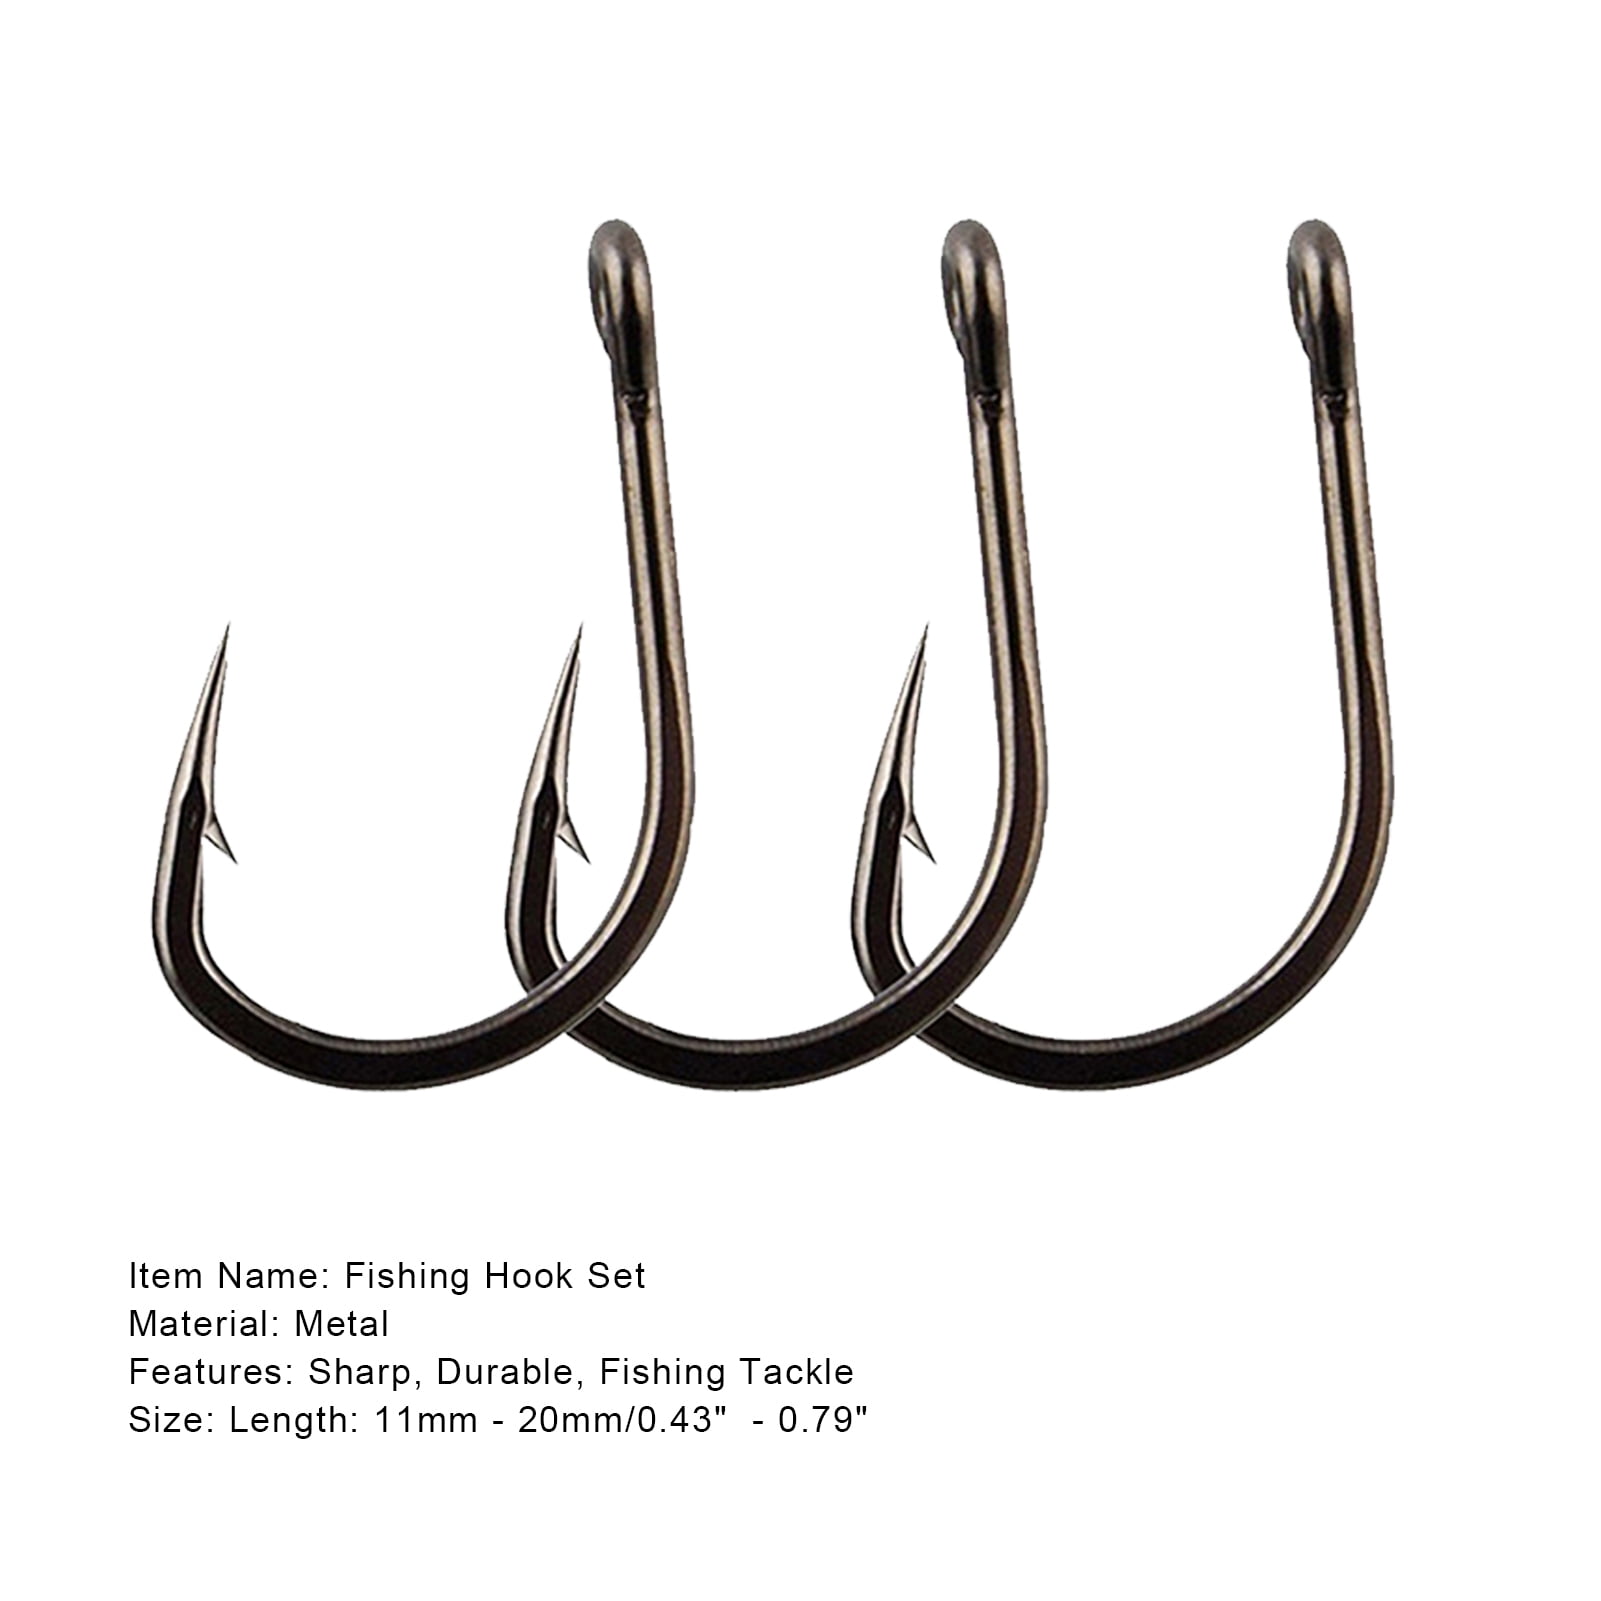  Minotaur Hooks Ultimate Fishing Hooks - Carbon Steel